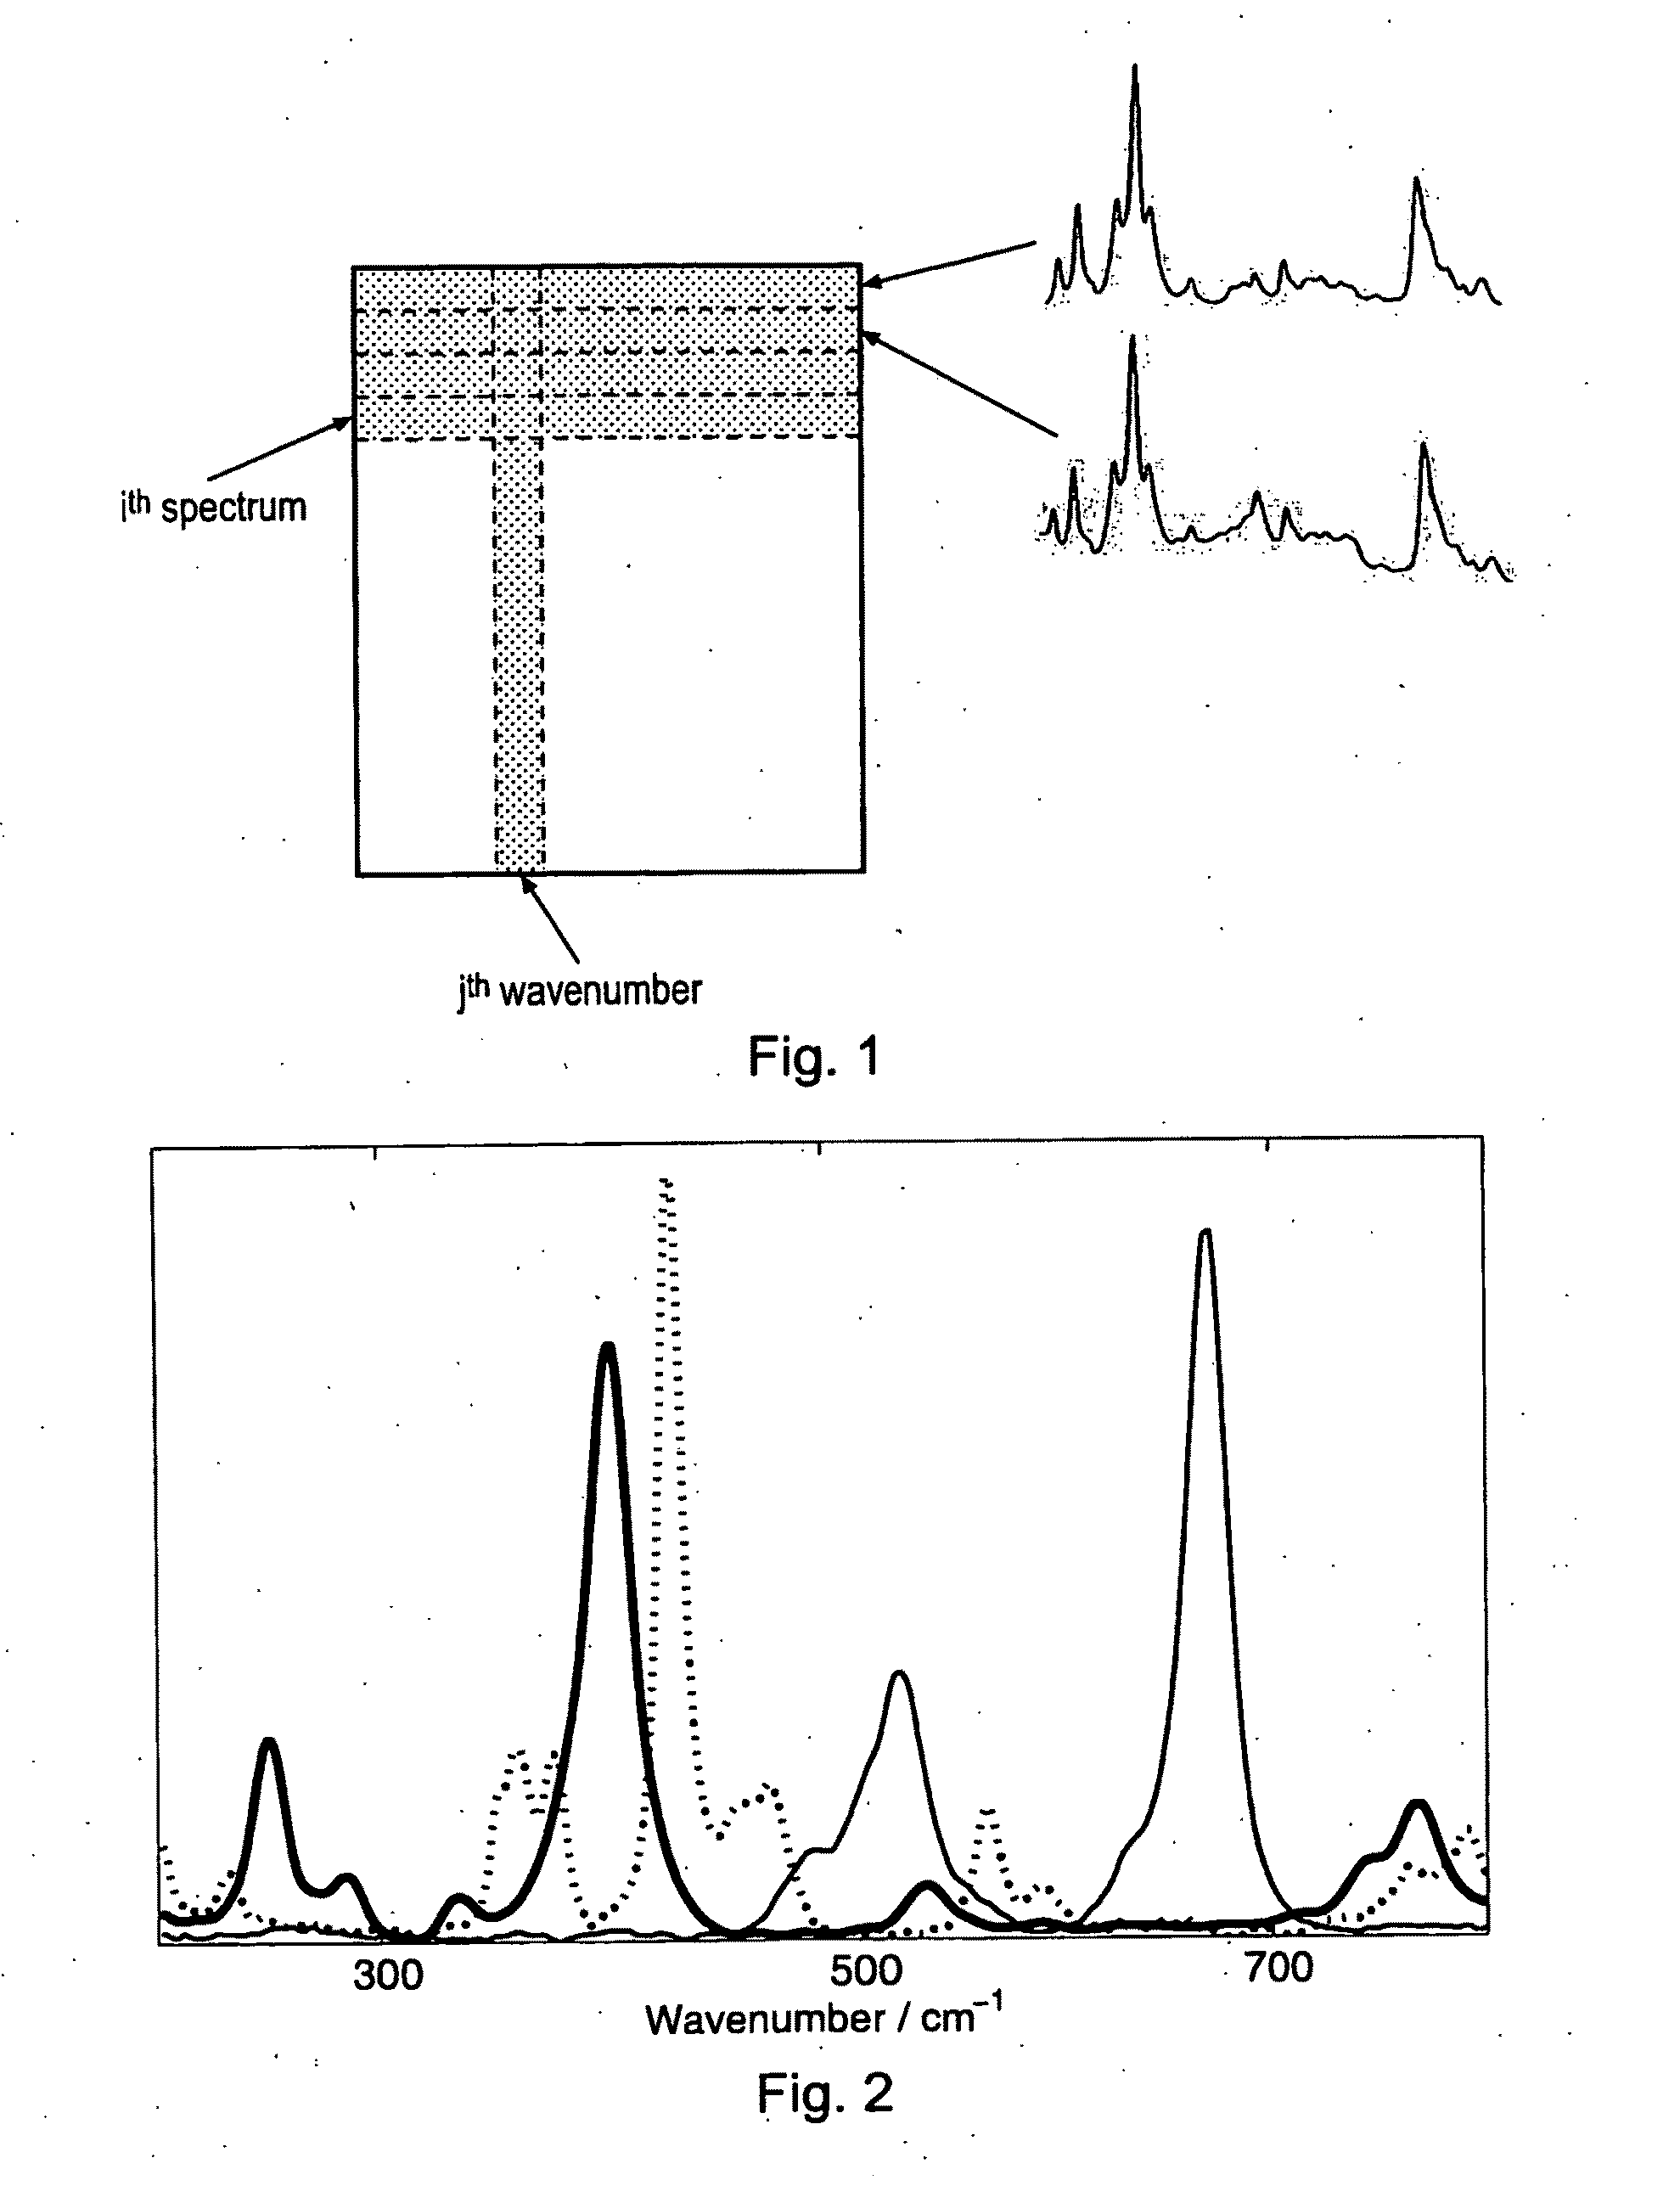 Spectroscopic analysis methods